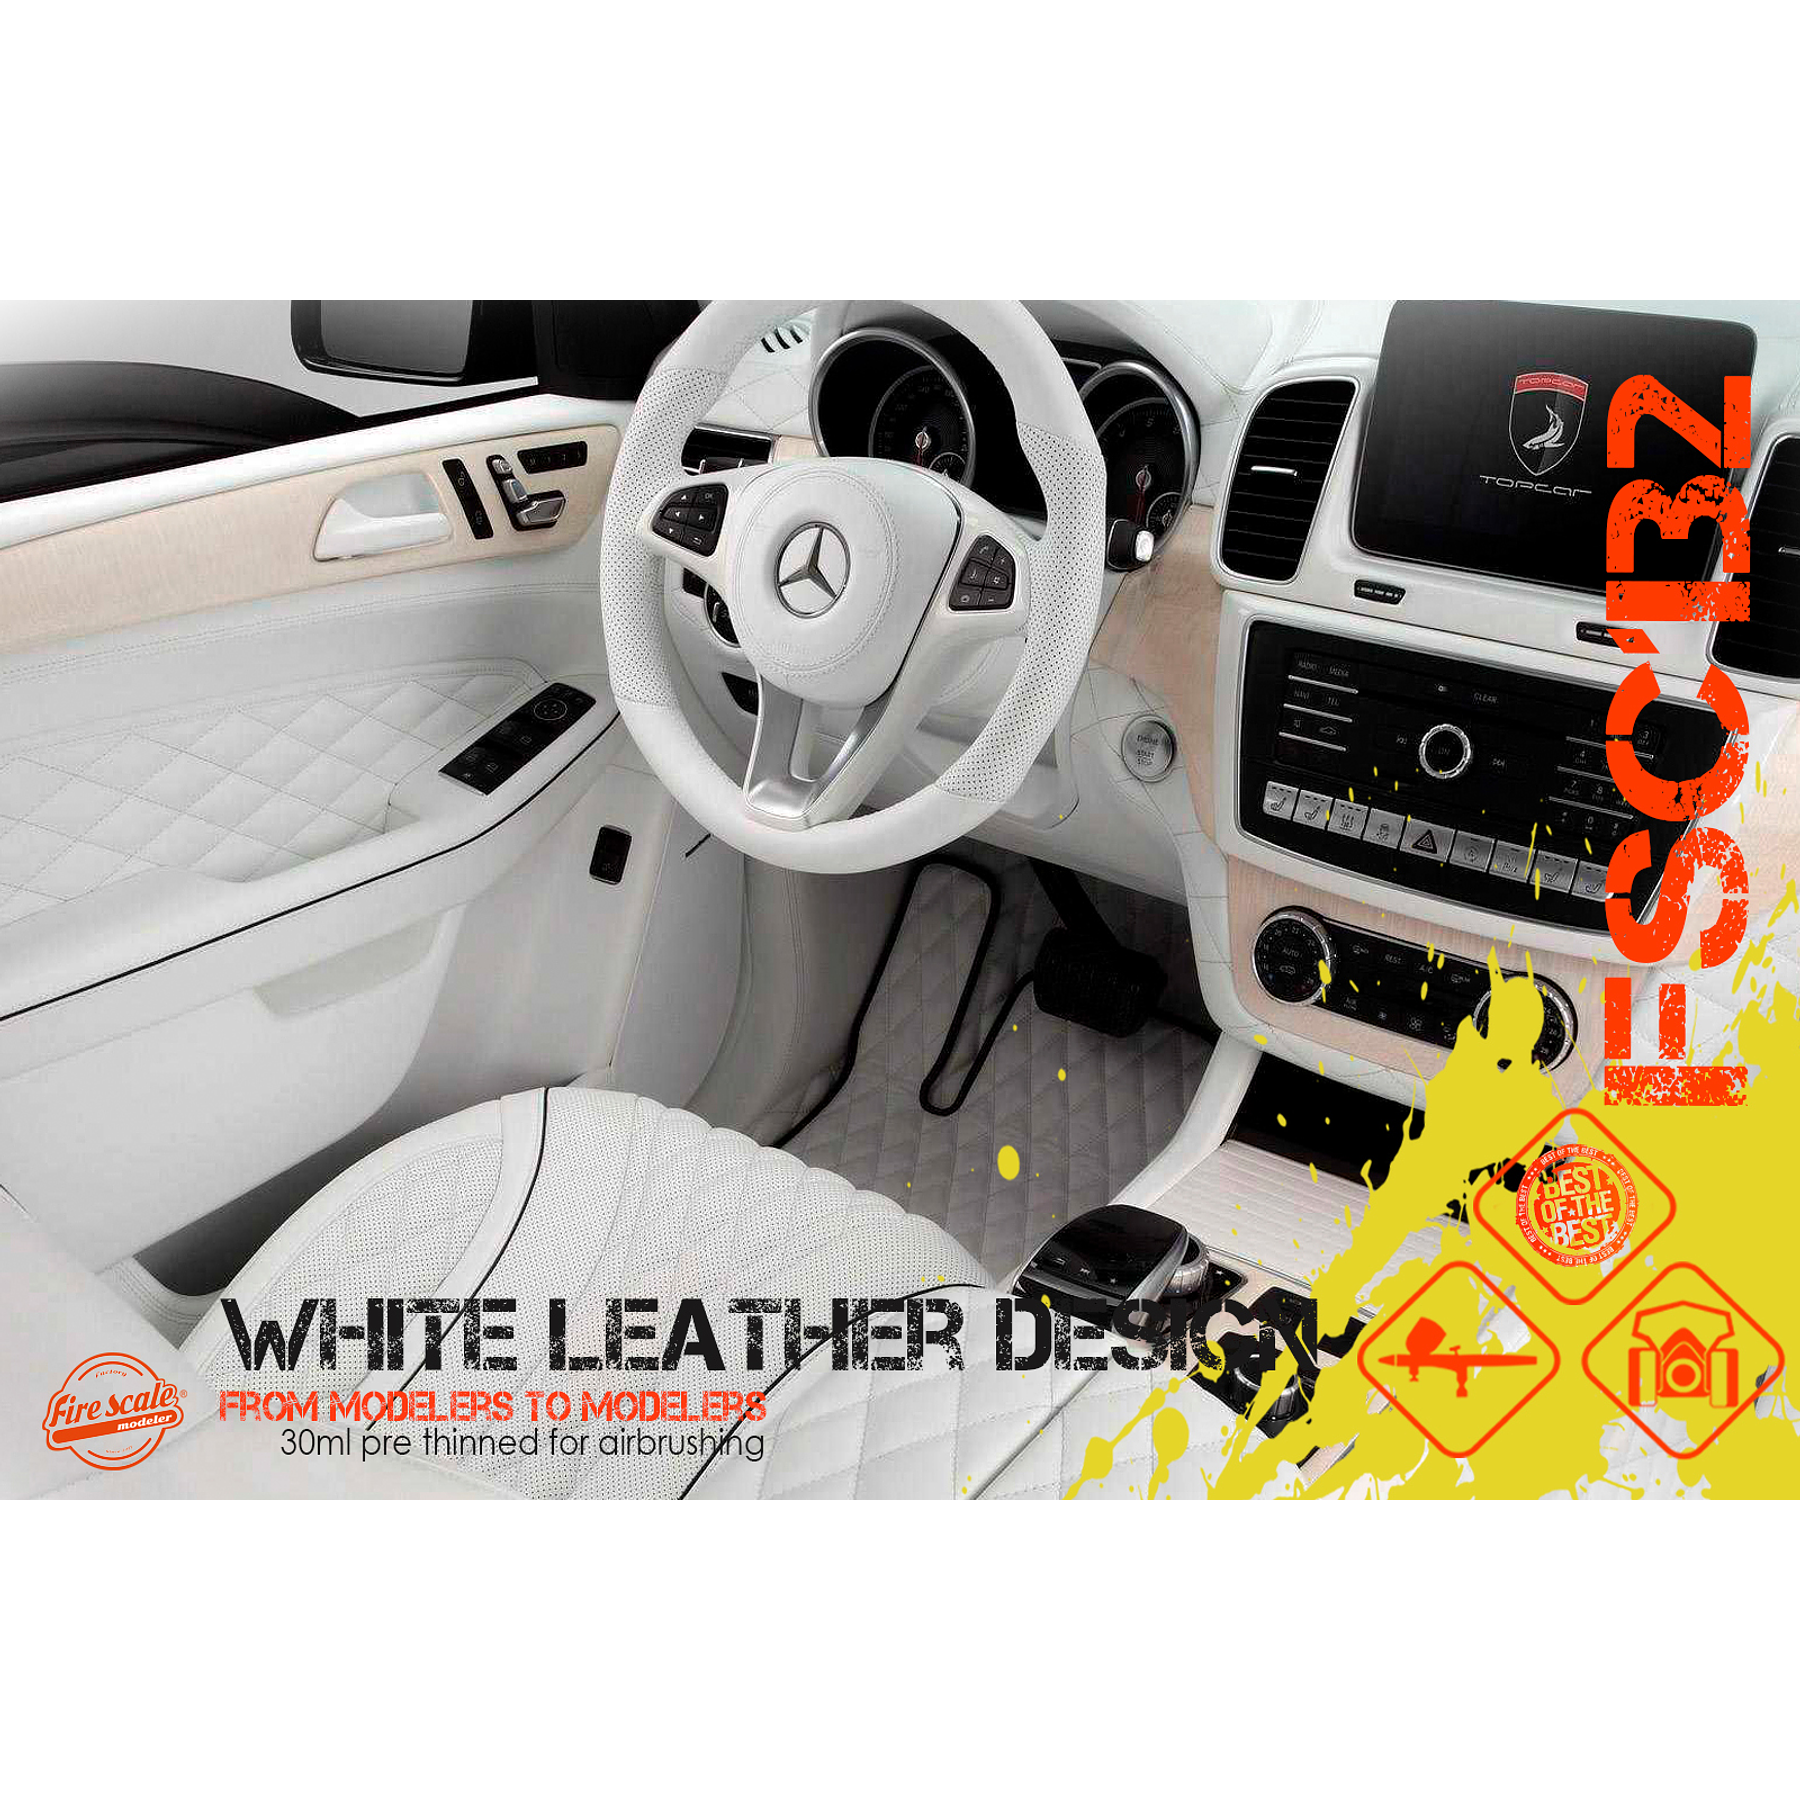 White Leather  Design